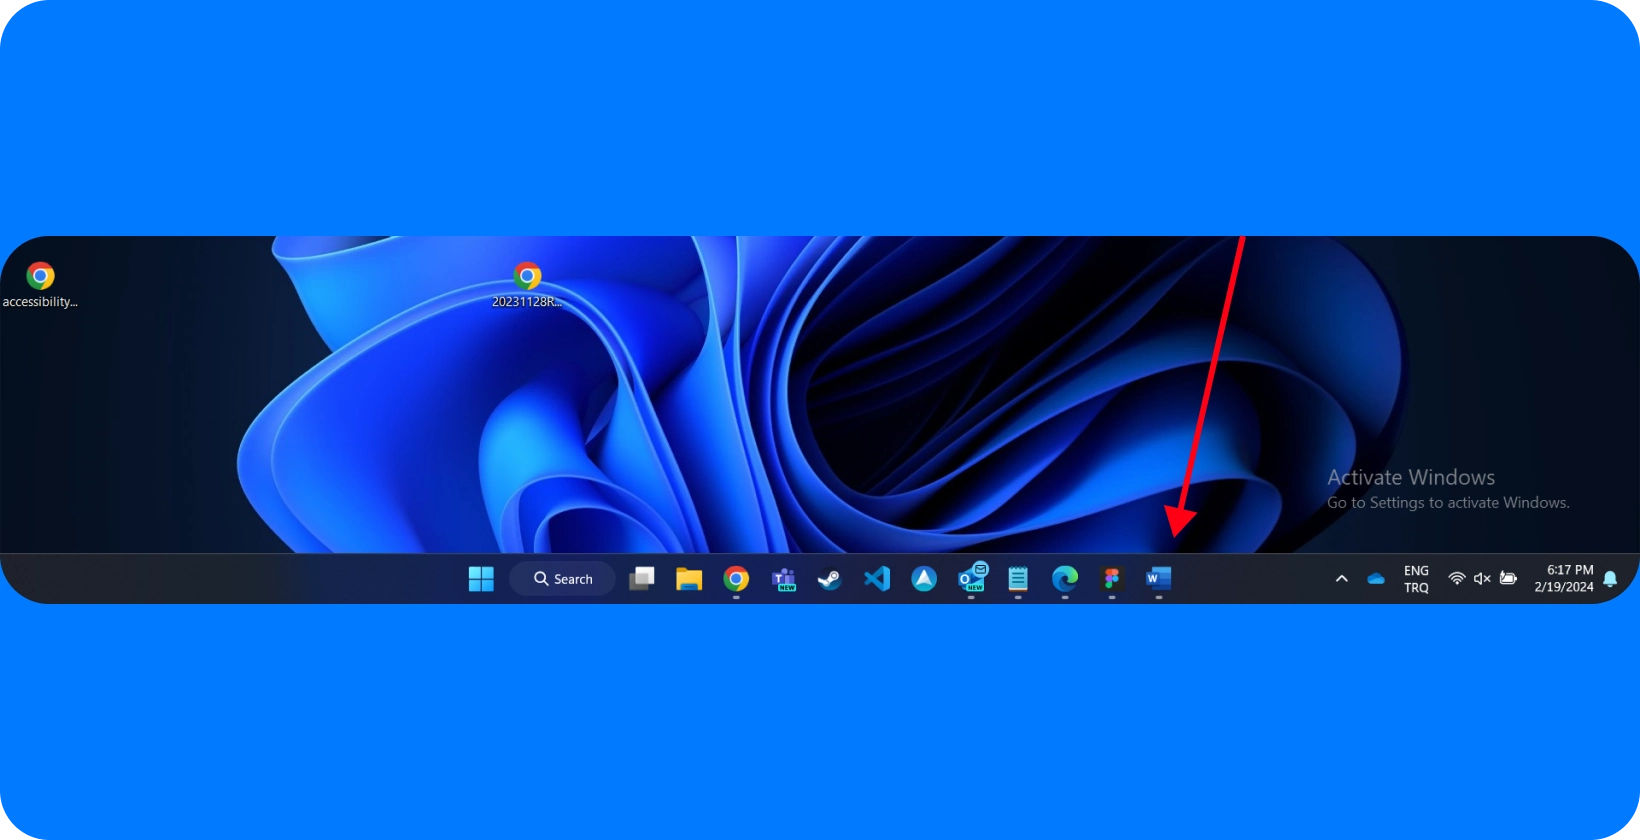 Schermata del desktop che mostra l'interfaccia di Windows con l'icona di Microsoft Word evidenziata, indicando un focus sulle funzionalità di dettatura.